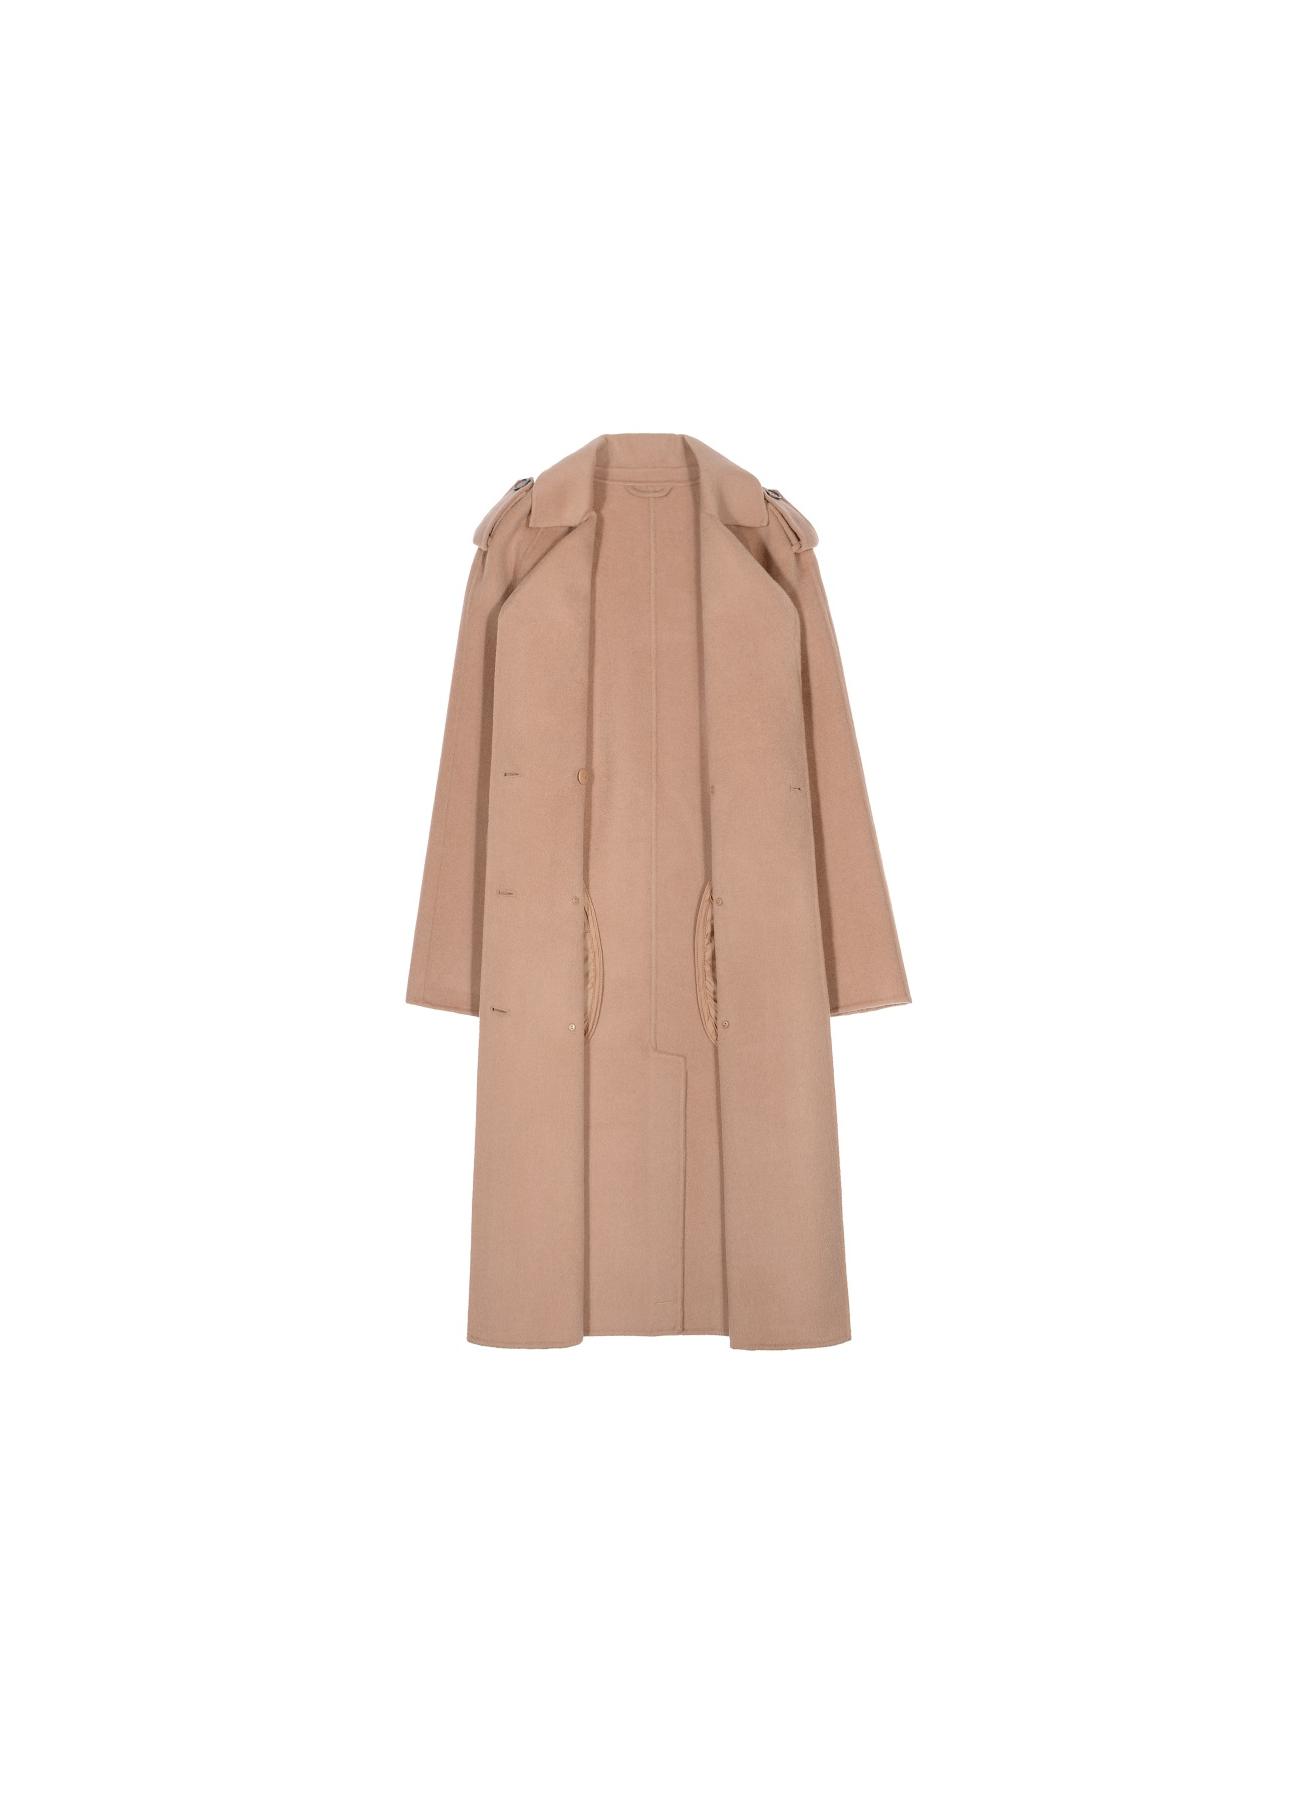 Klasyczny płaszcz damski w kolorze camel PLADT-0035-81(Z19)